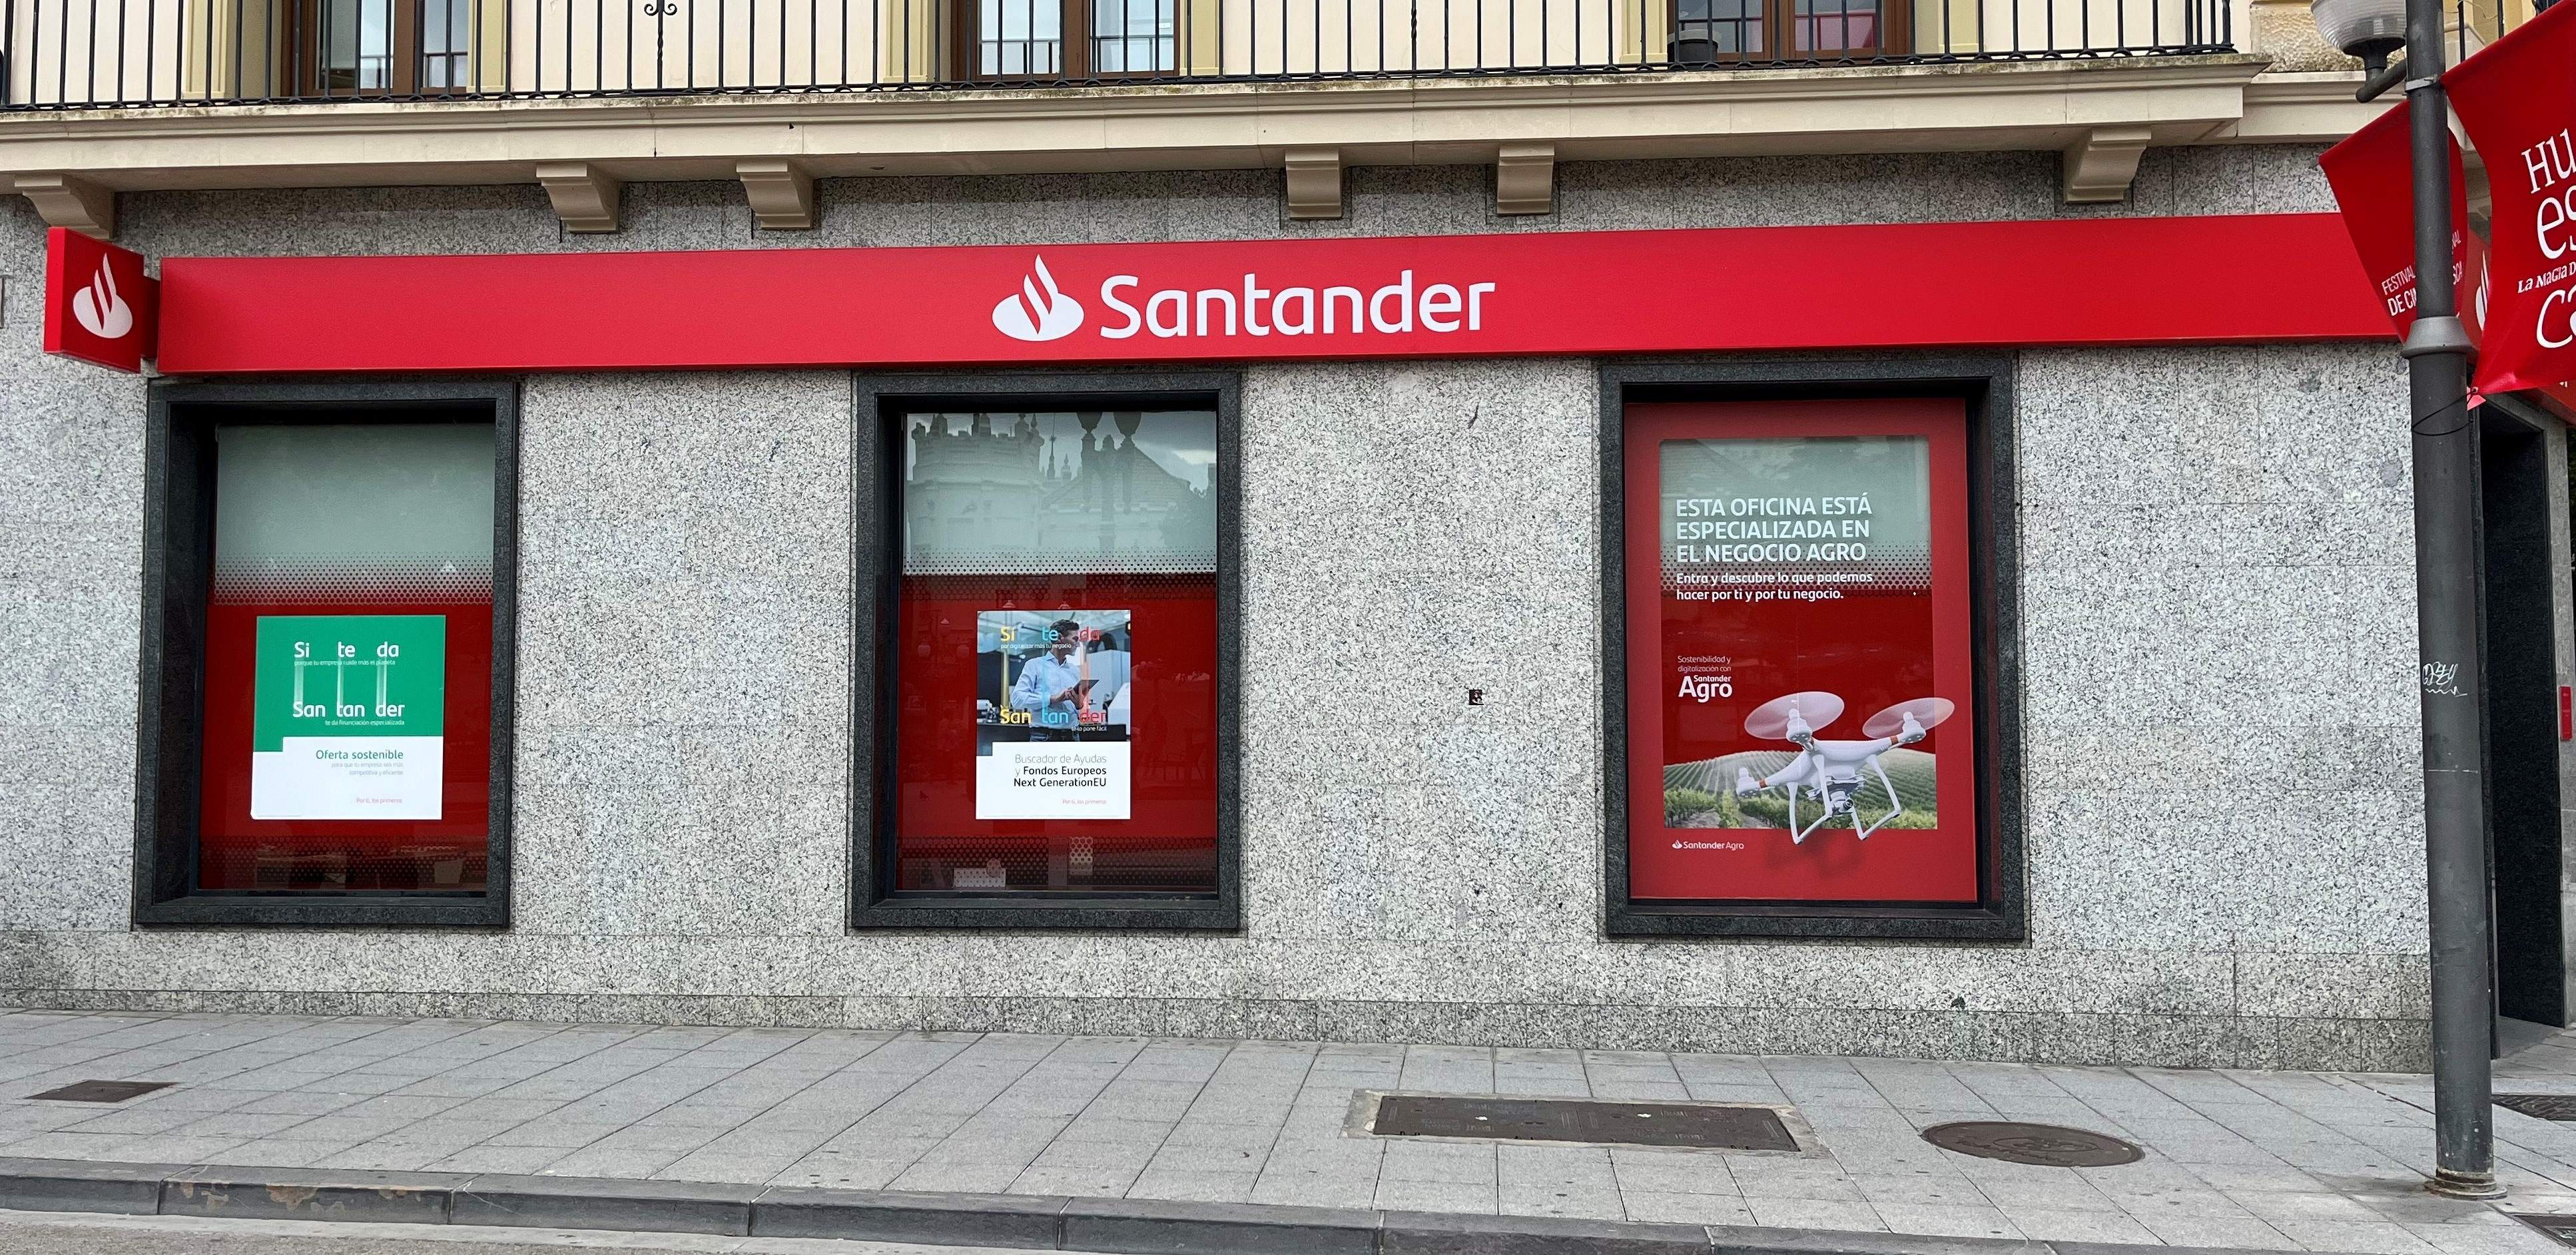 EuropaPress 5283024 oficina banco santander huesca ocho remodeladas aragon entidad reforzar